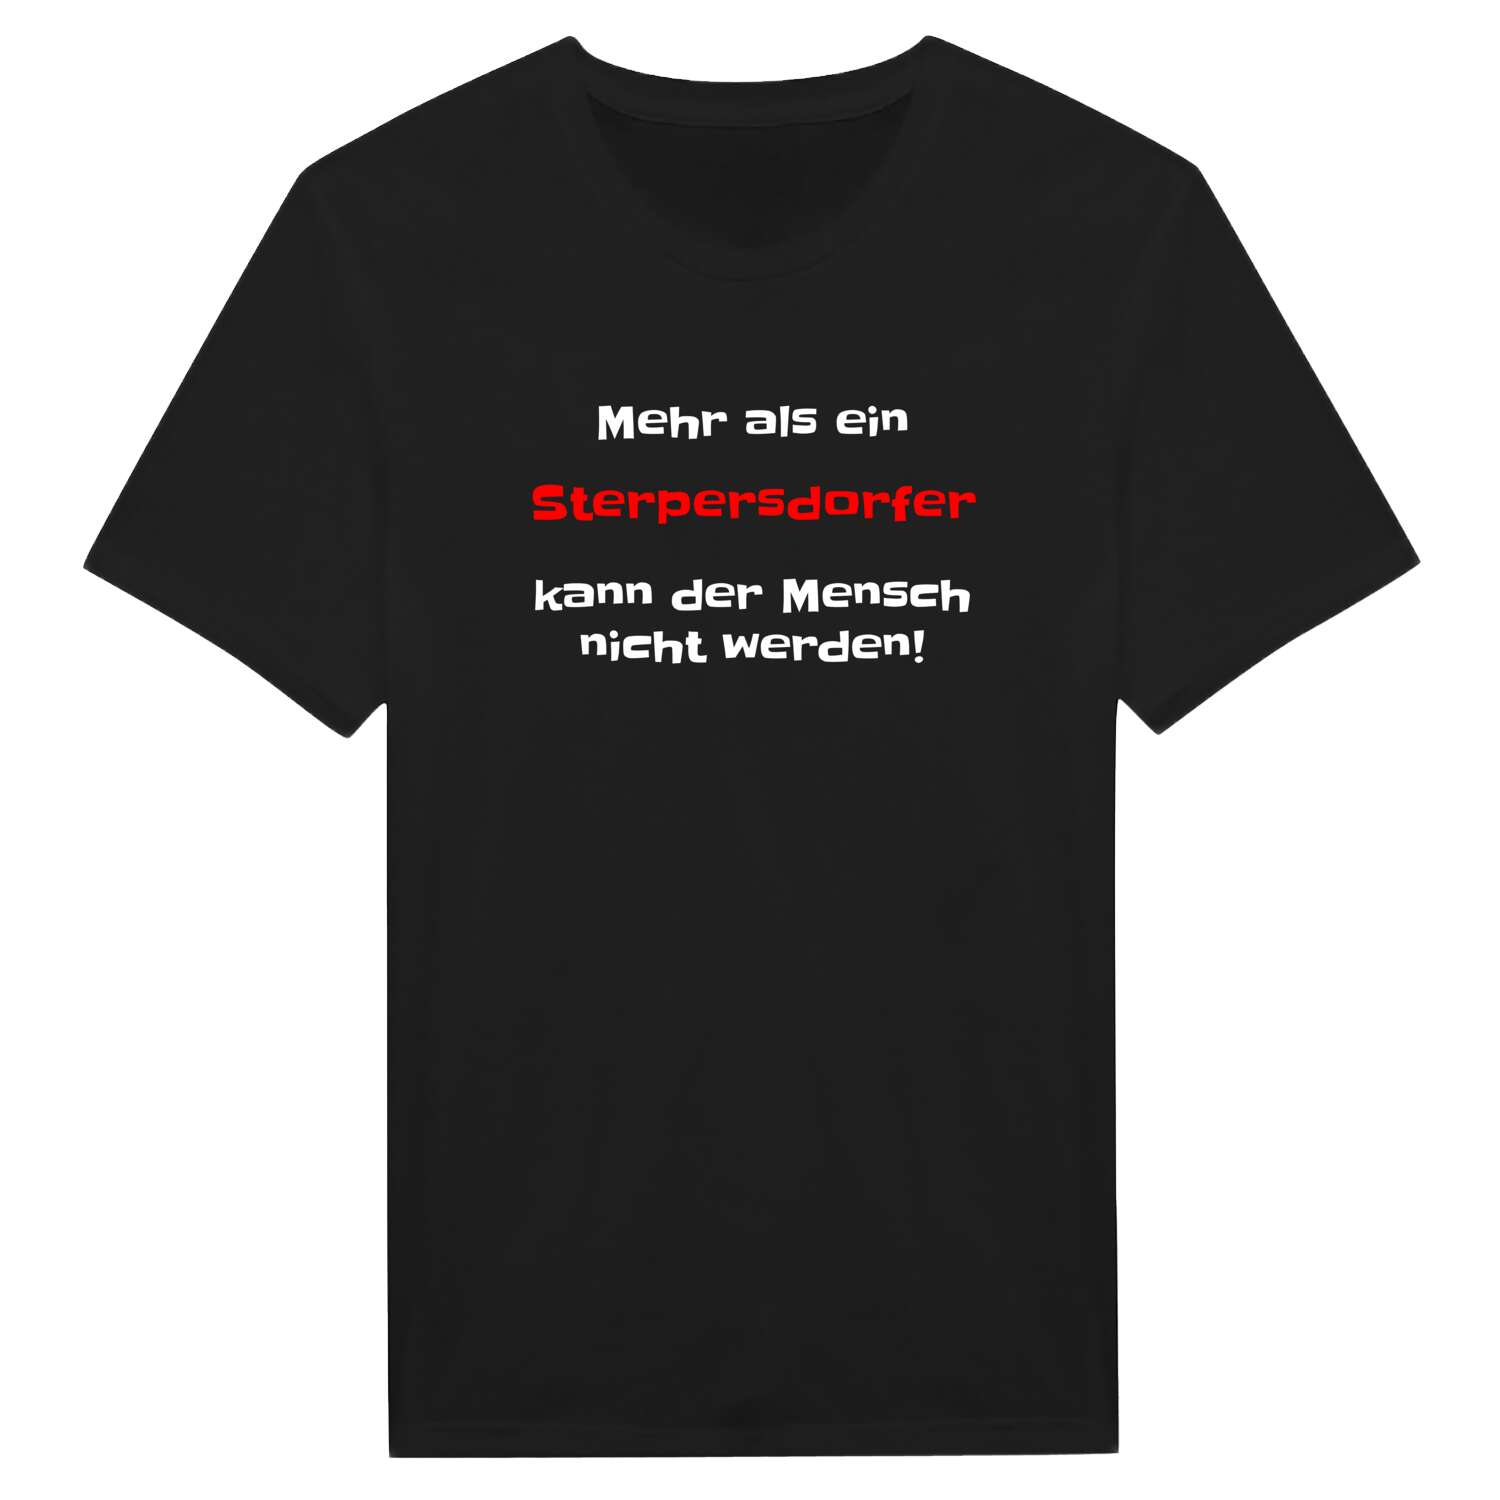 Sterpersdorf T-Shirt »Mehr als ein«